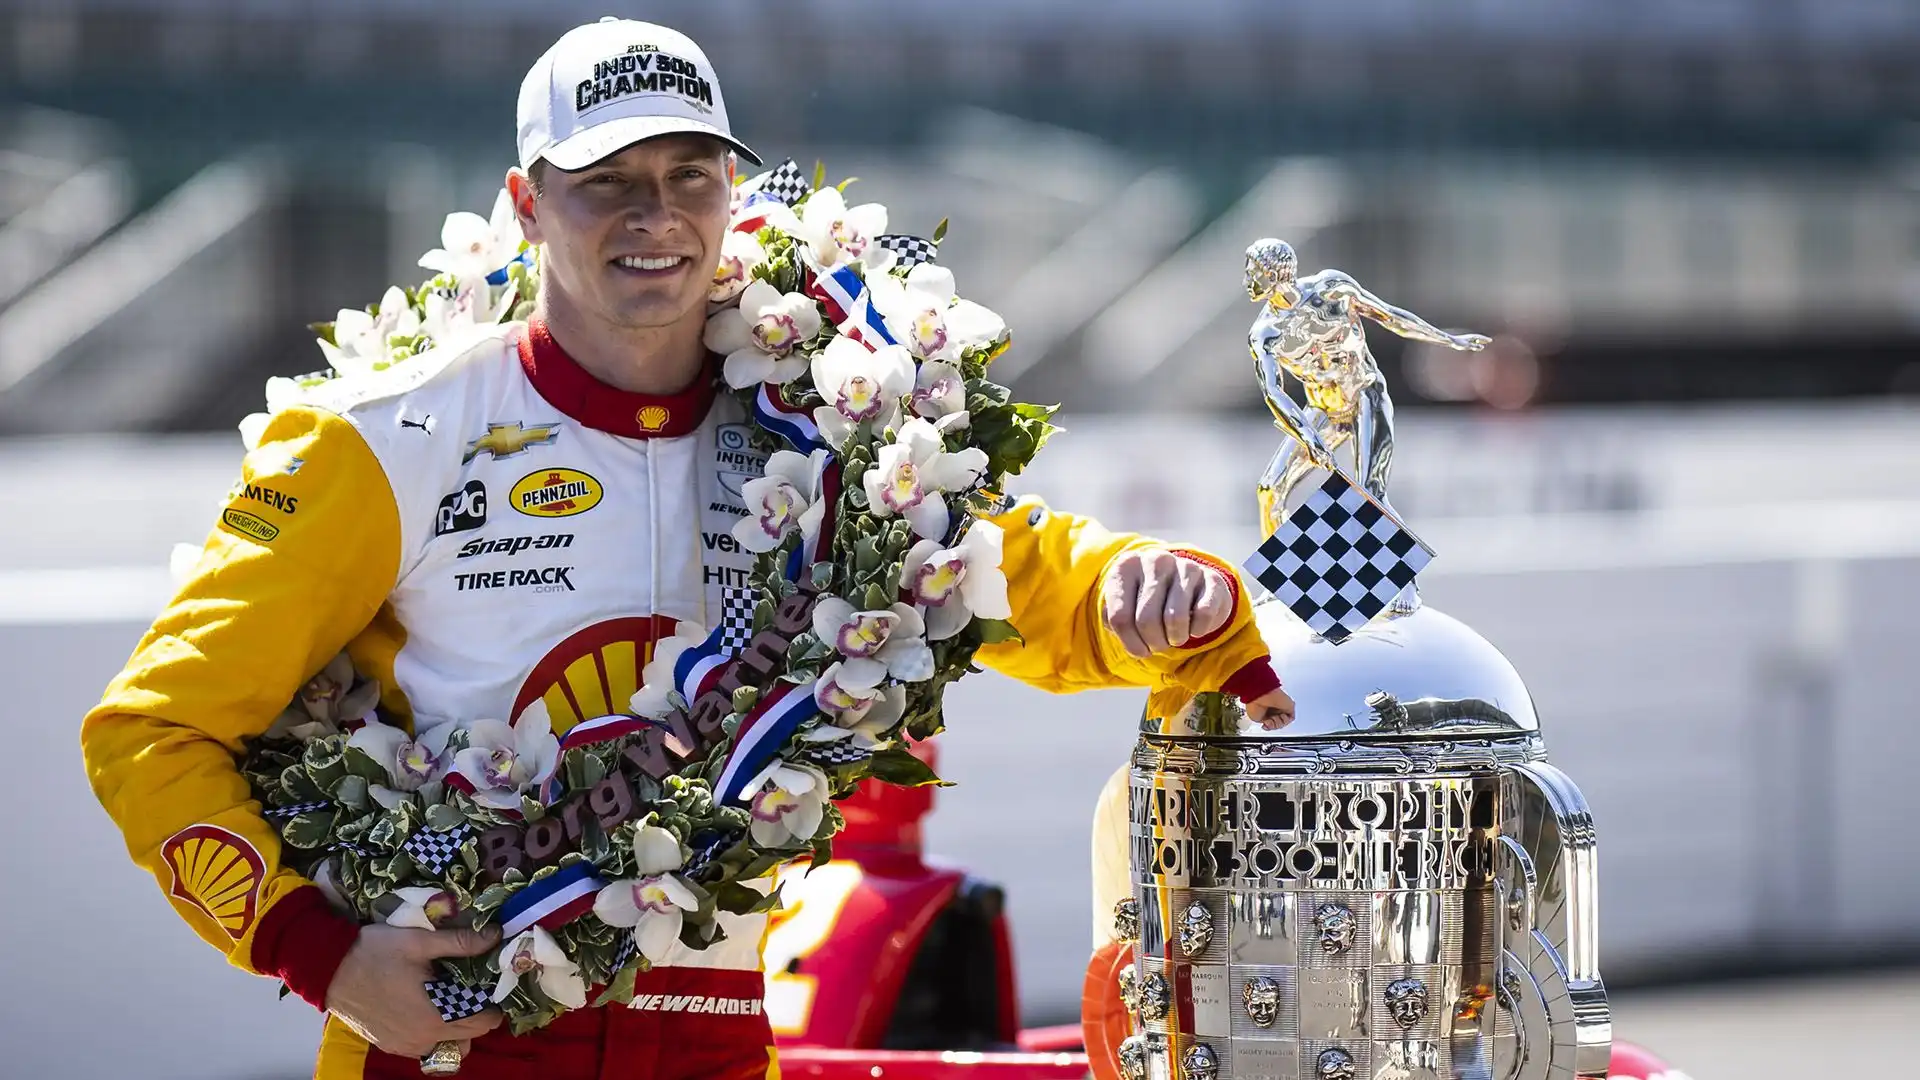 Il debutto nella IndyCar Series: Newgarden si fa notare con una guida audace e talentuosa.